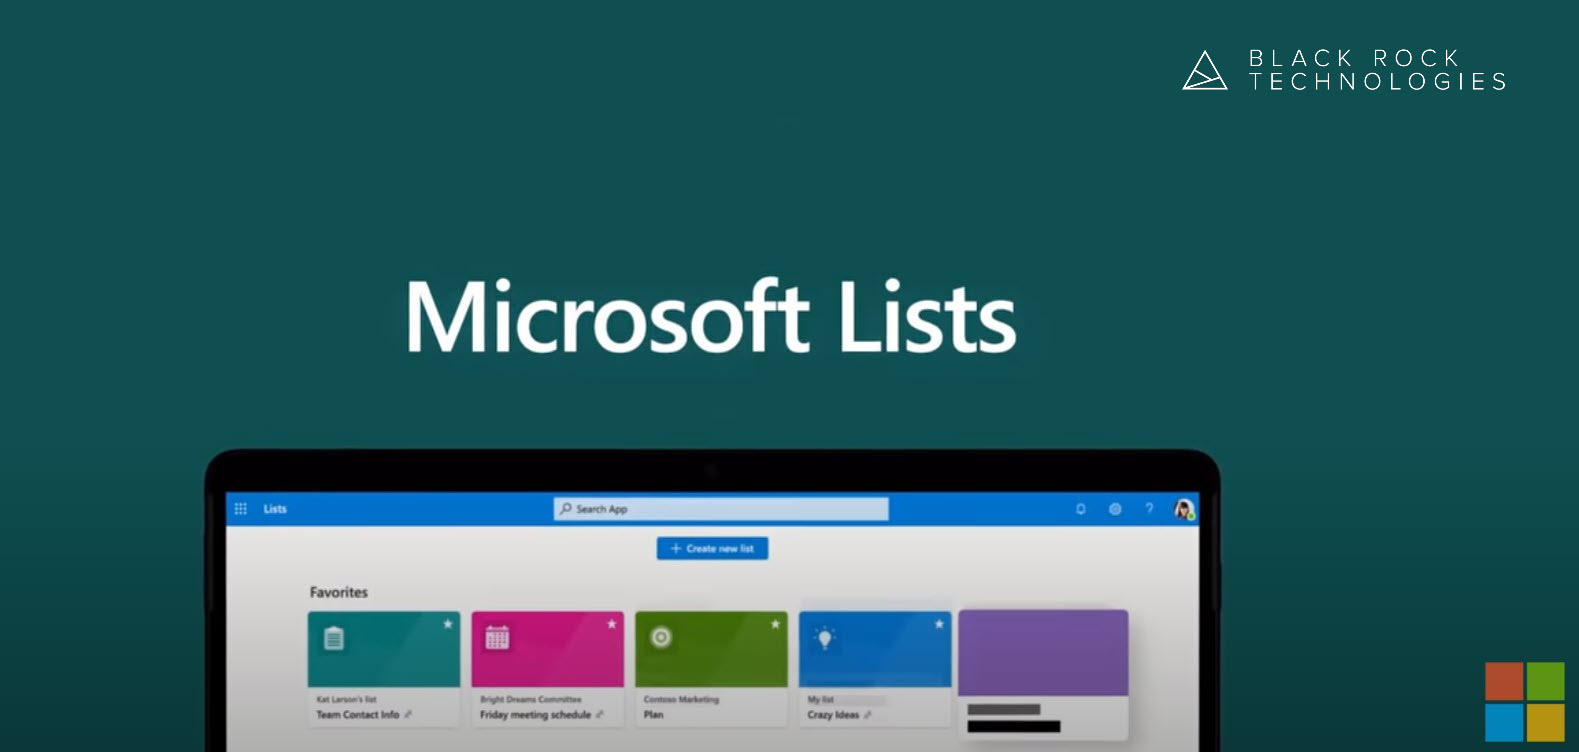 Microsoft lists